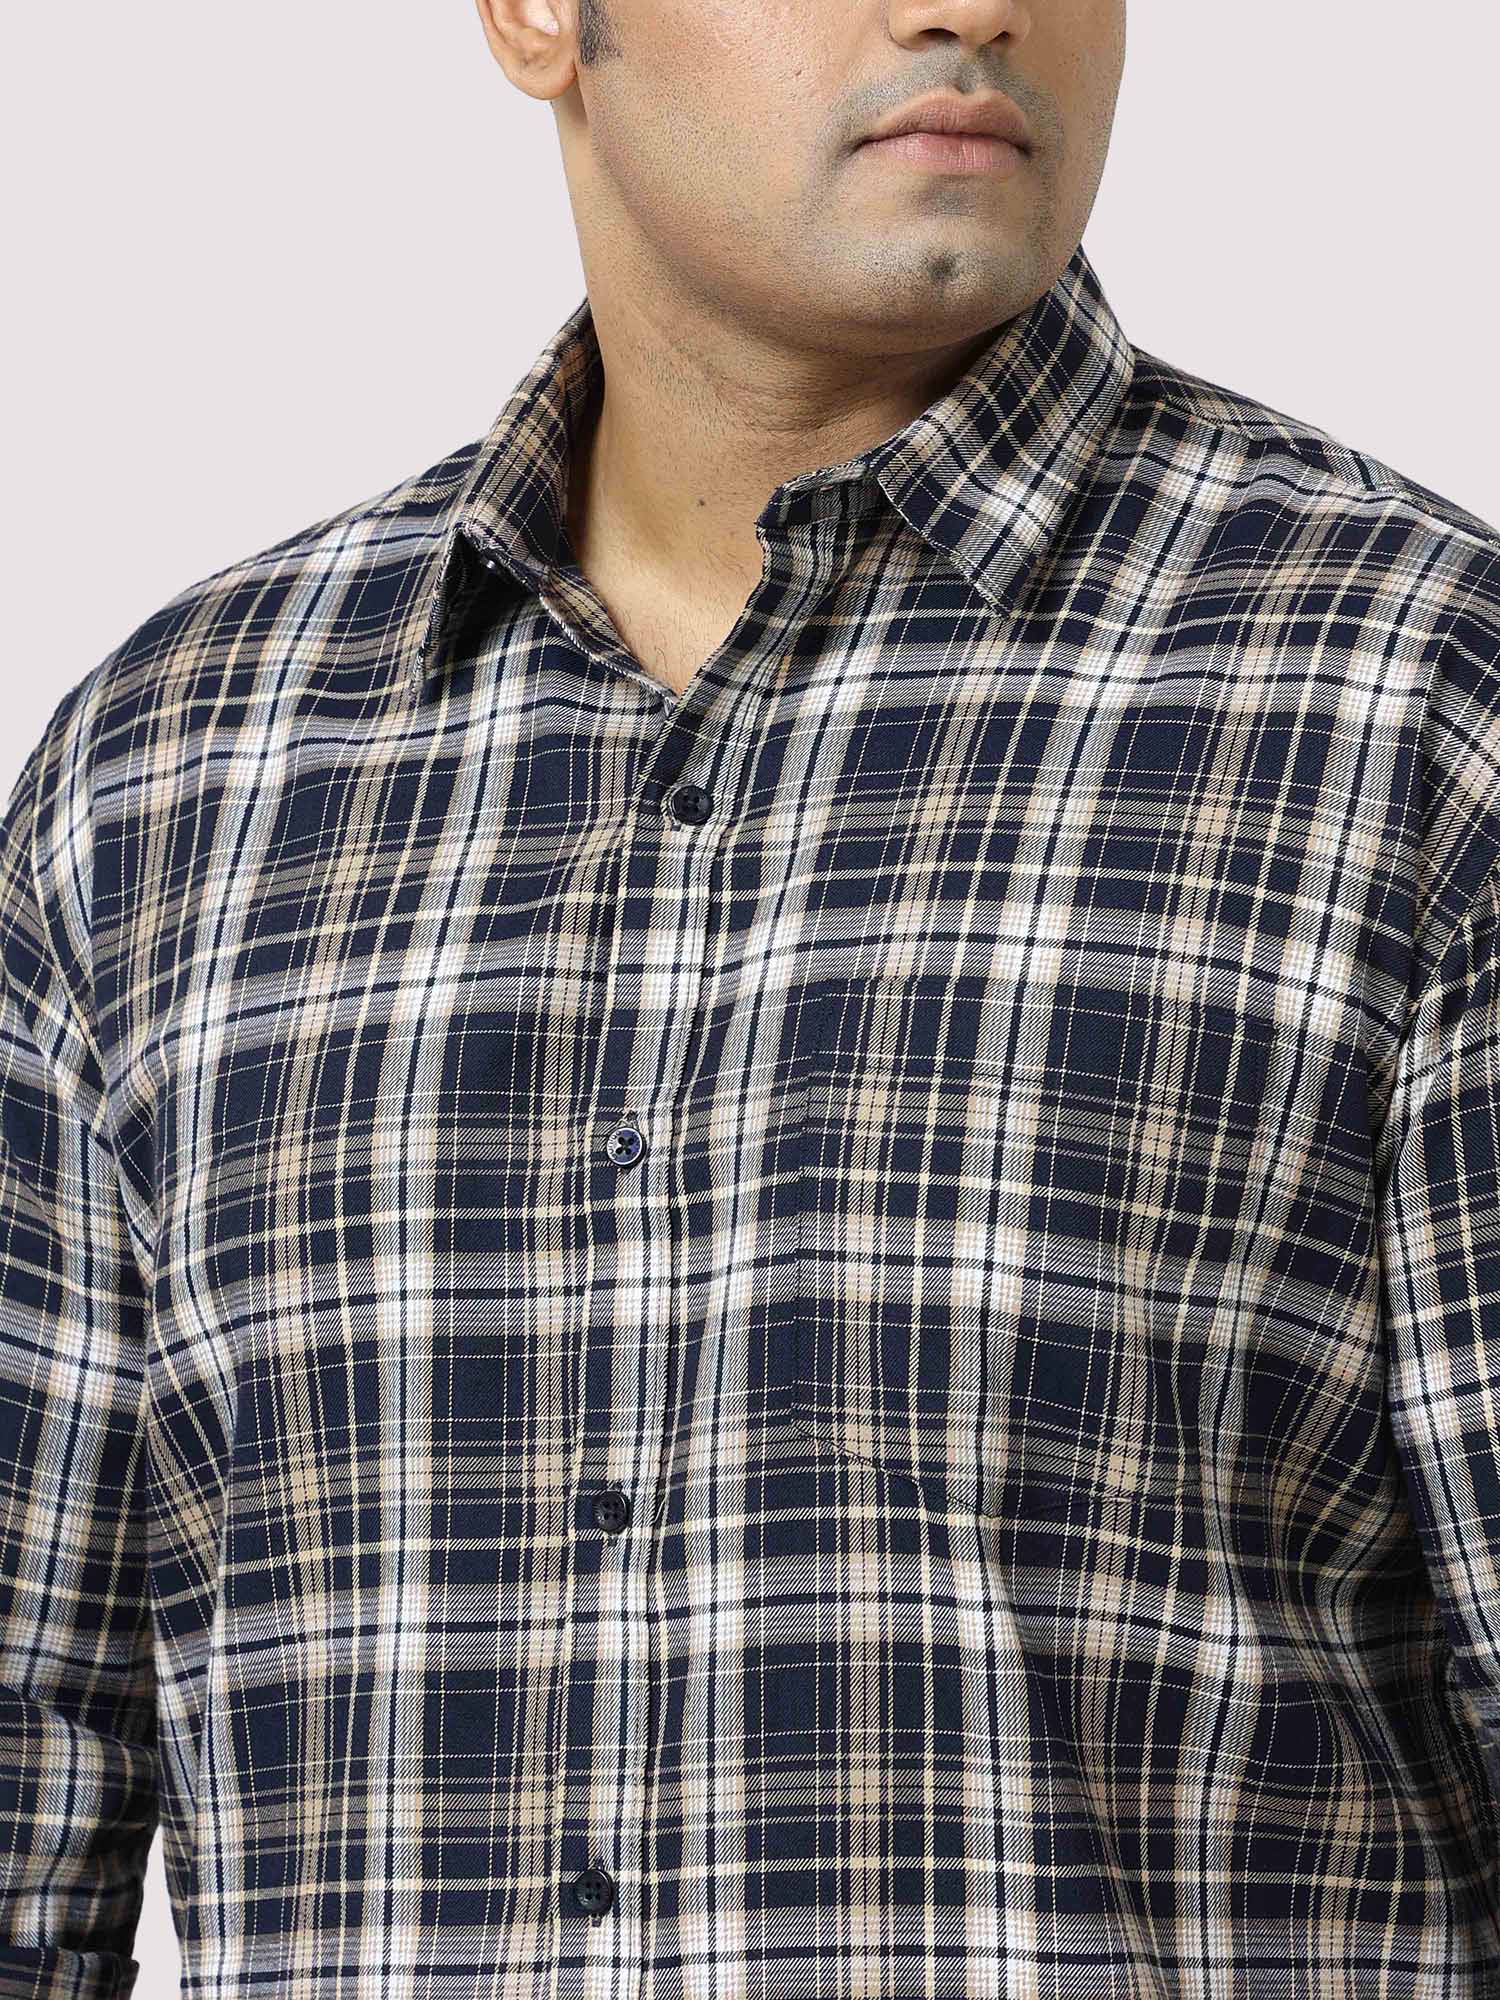 Brown on White Checkered Cotton Full Shirt Men's Plus Size